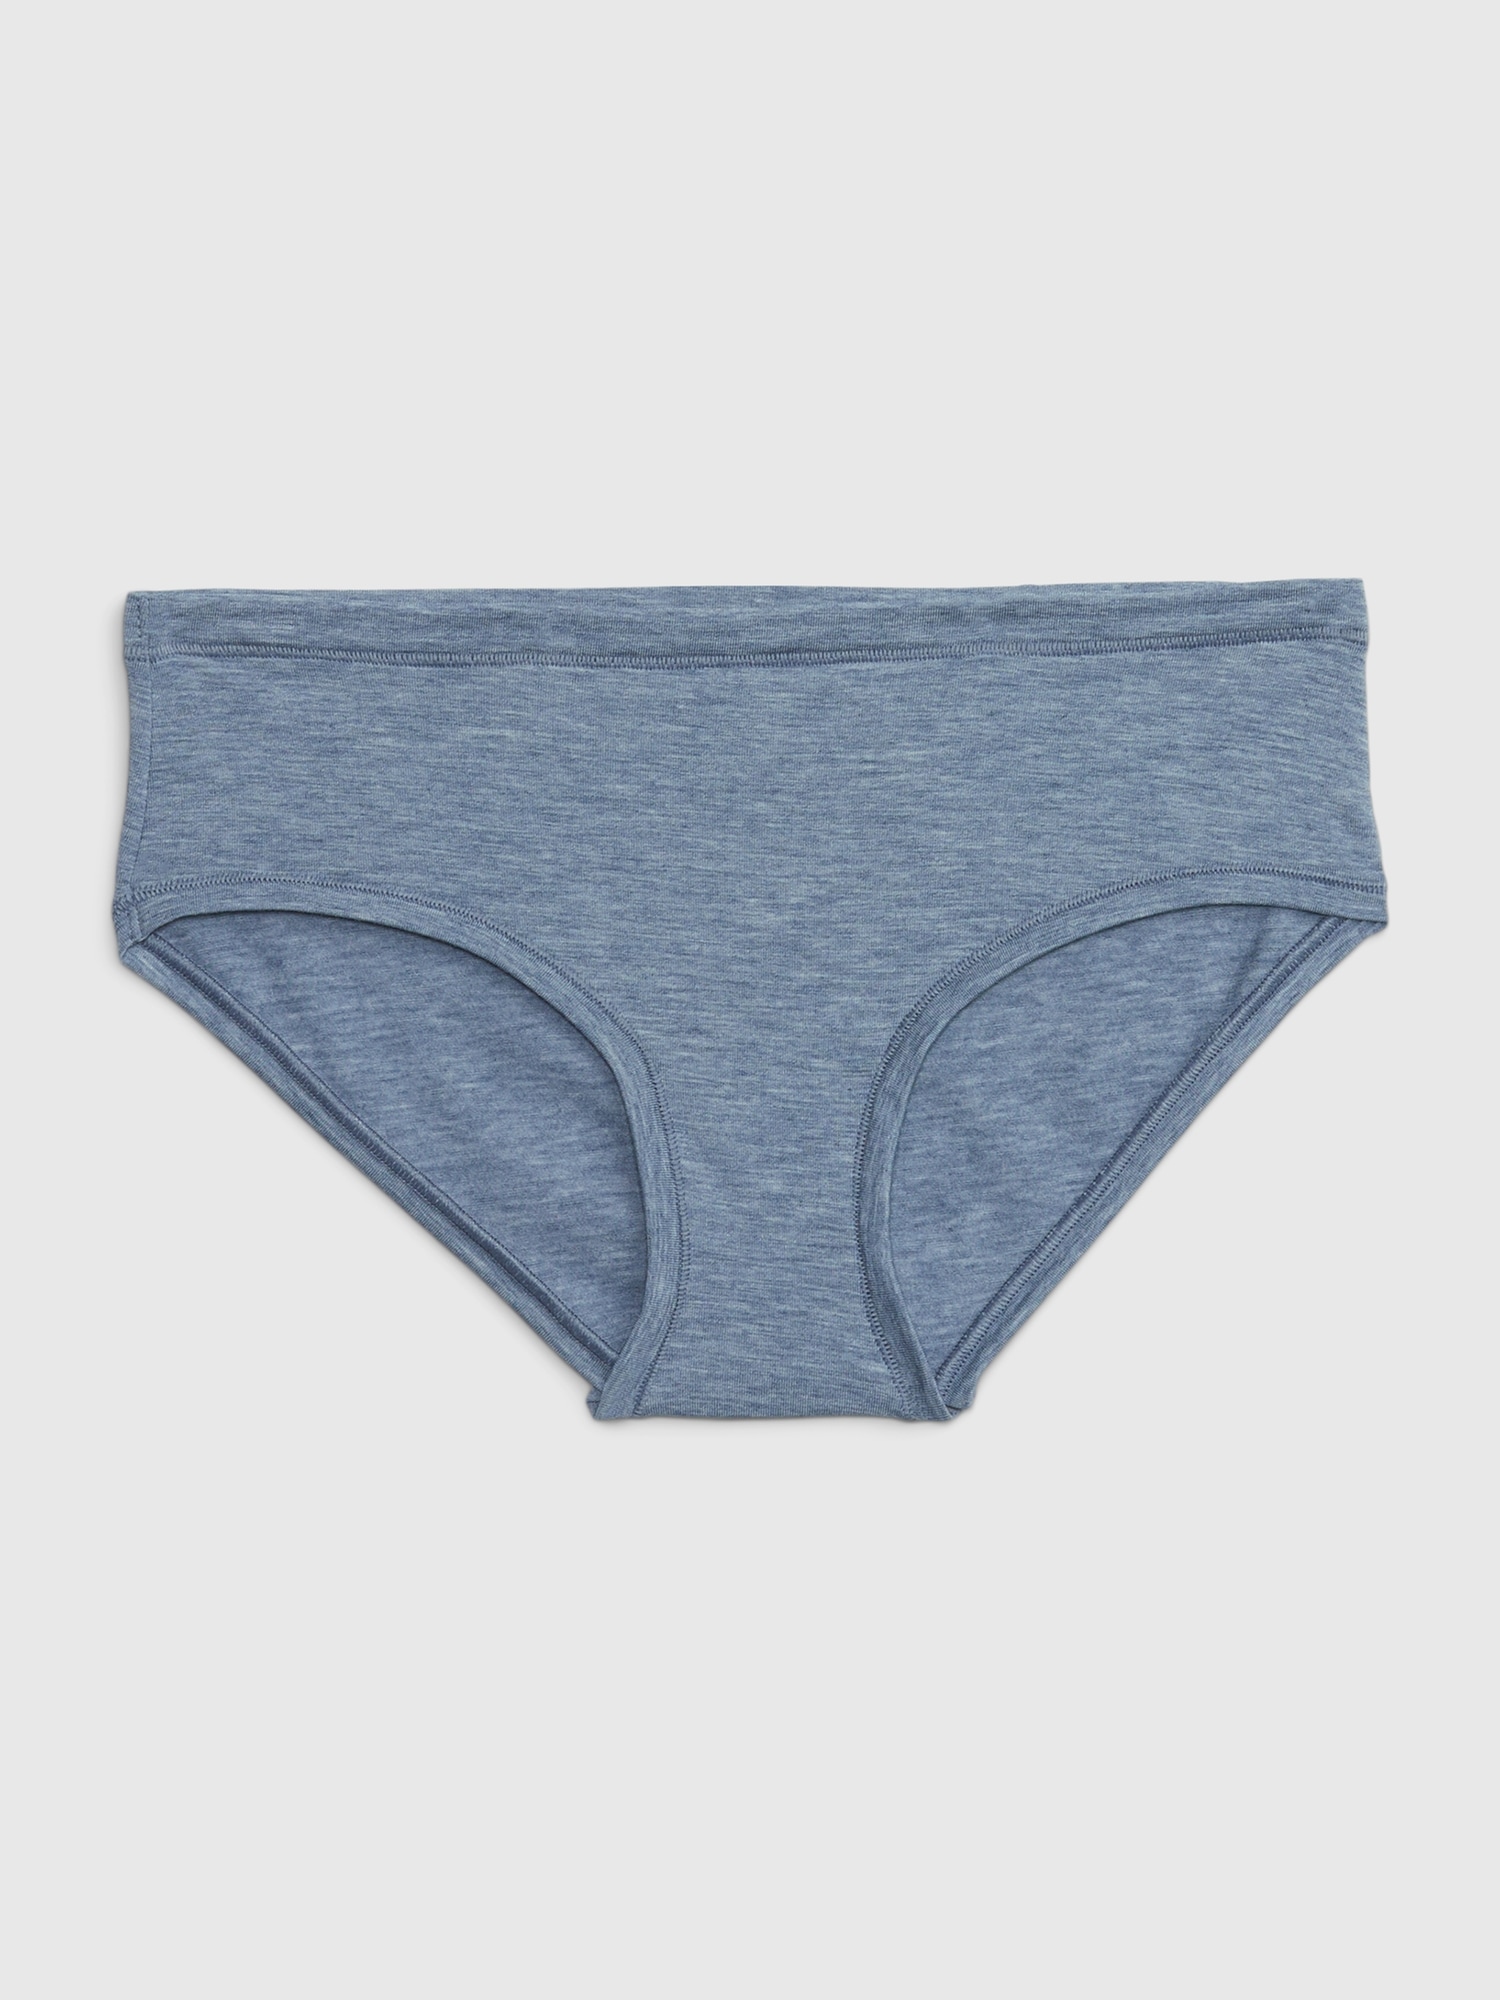 Gap Breathe Hipster Underwear Women's Undies Panty Panties Blue Star Print  NWT 